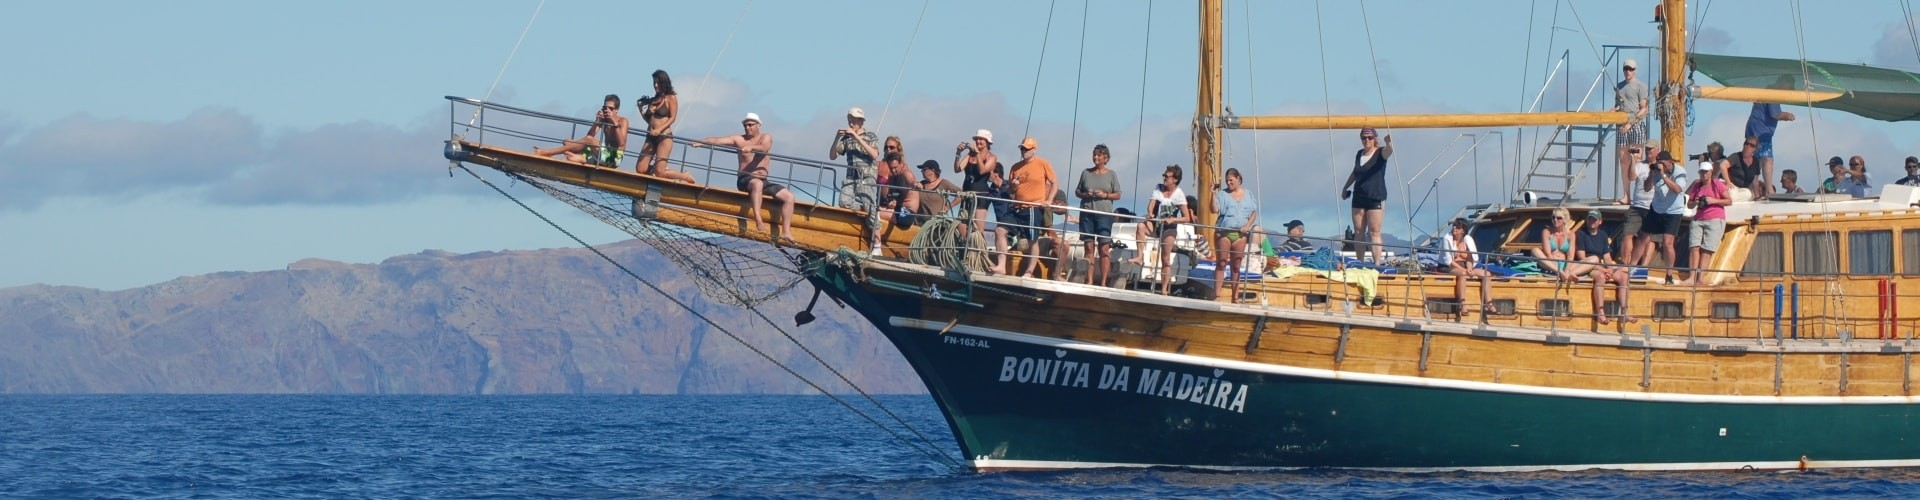 Passeios de Barco na Ilha da Madeira